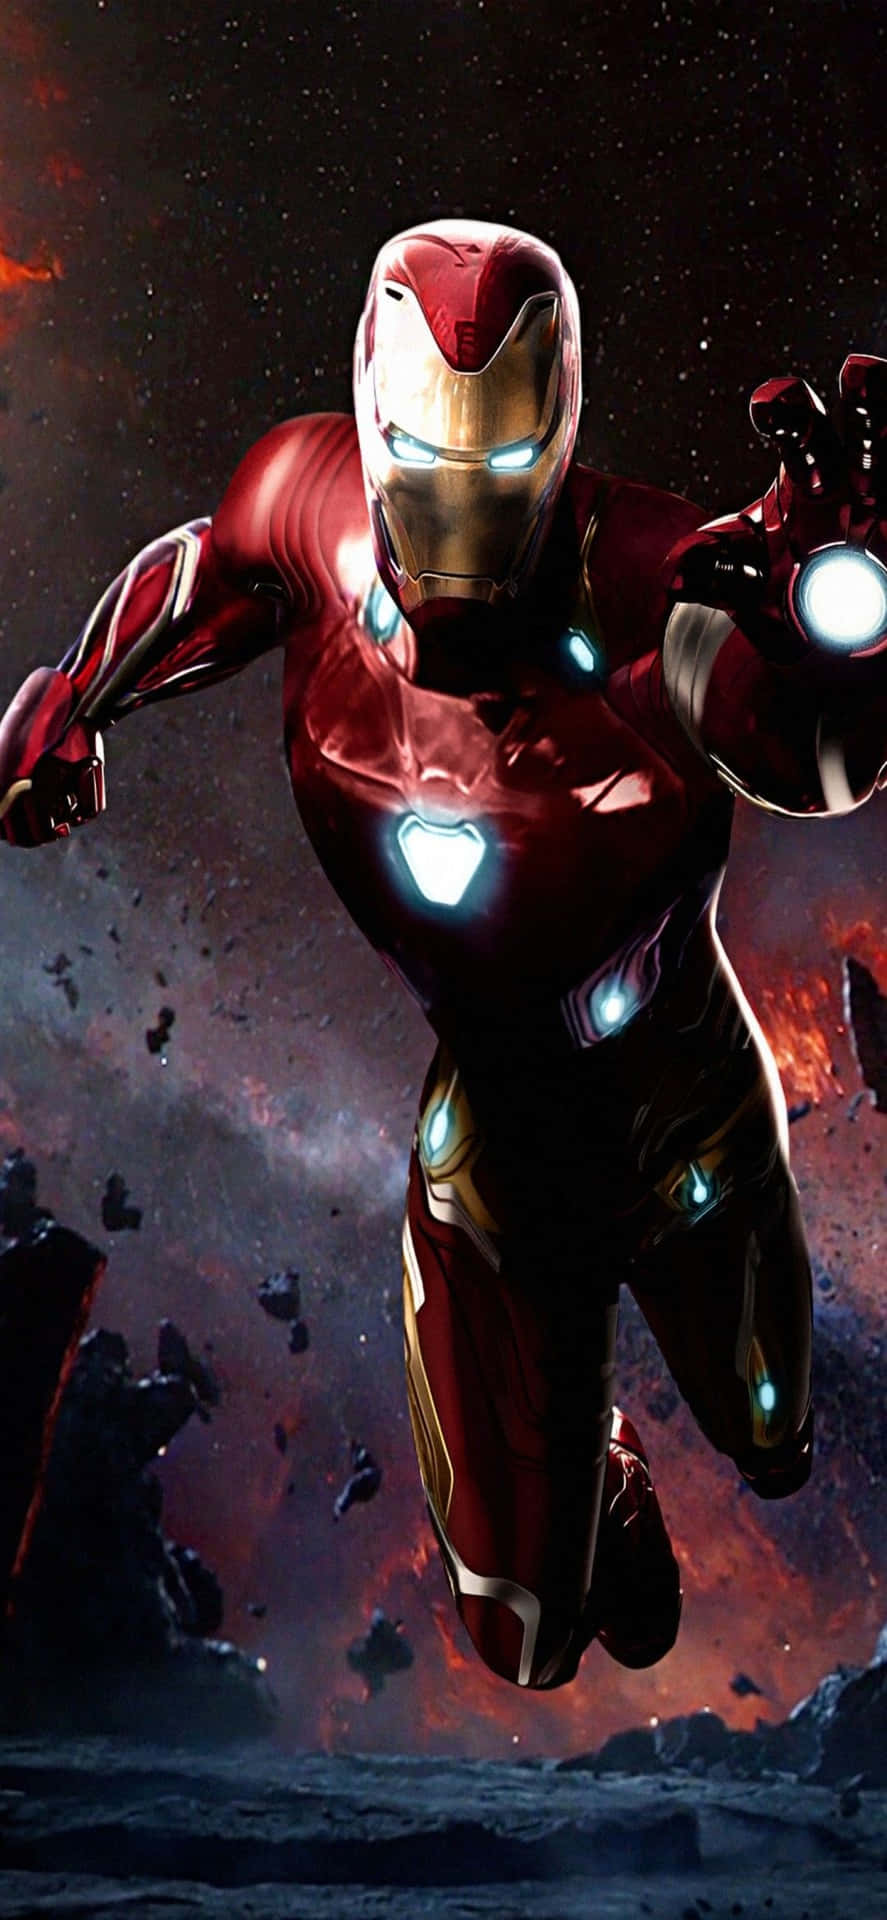 Iphonex Bakgrundsbild Med Iron Man, Där Han Pekar Ut Sin Blaster.